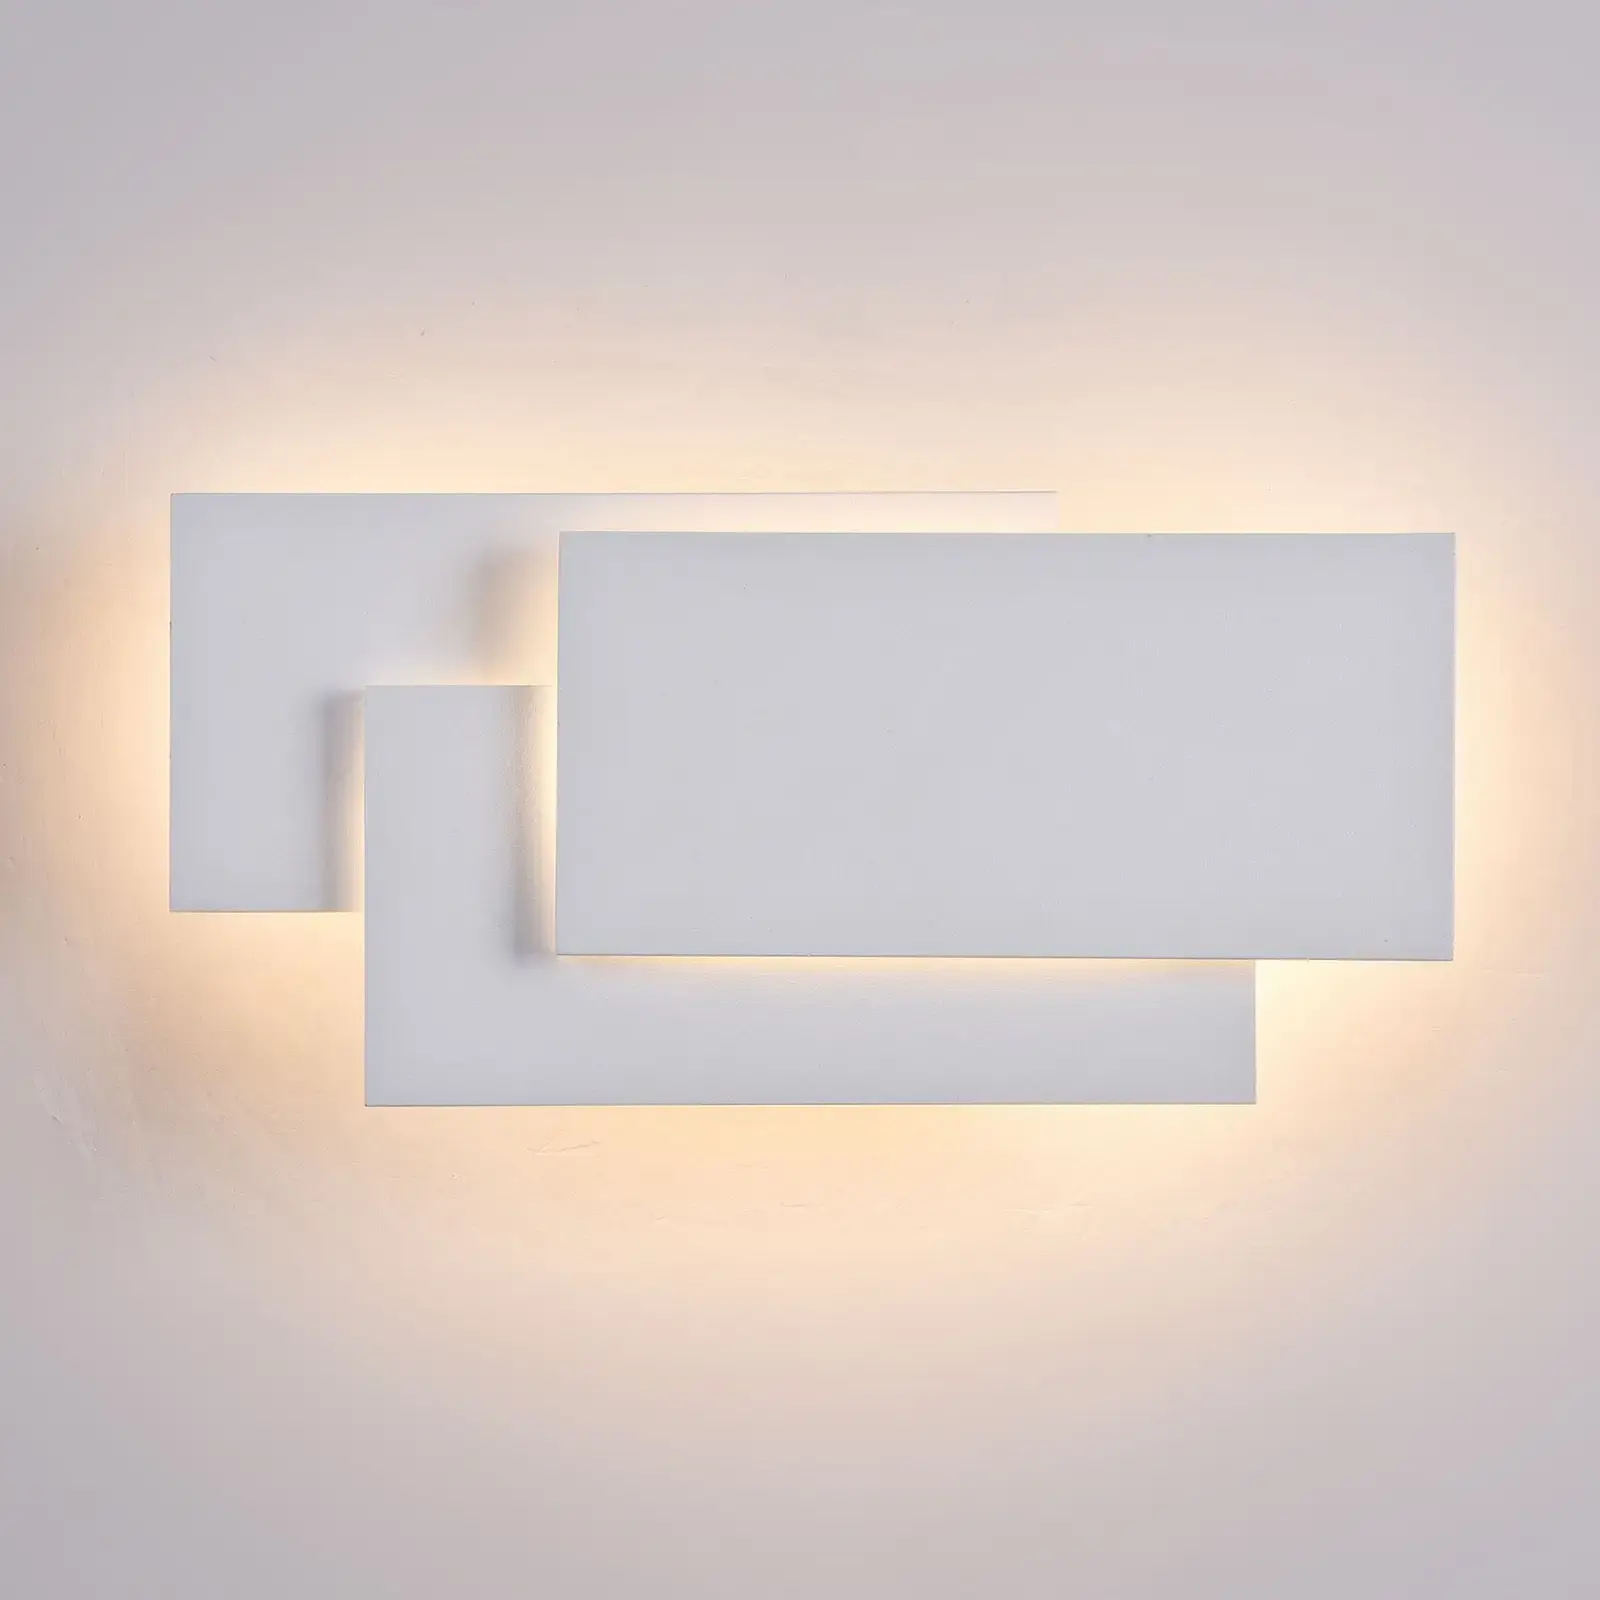 مصباح جانبي LED 12 وات ديكور فندقي بتصميم جديد مصابيح جدارية لغرف النوم داخلية مصابيح منزلية داخلية